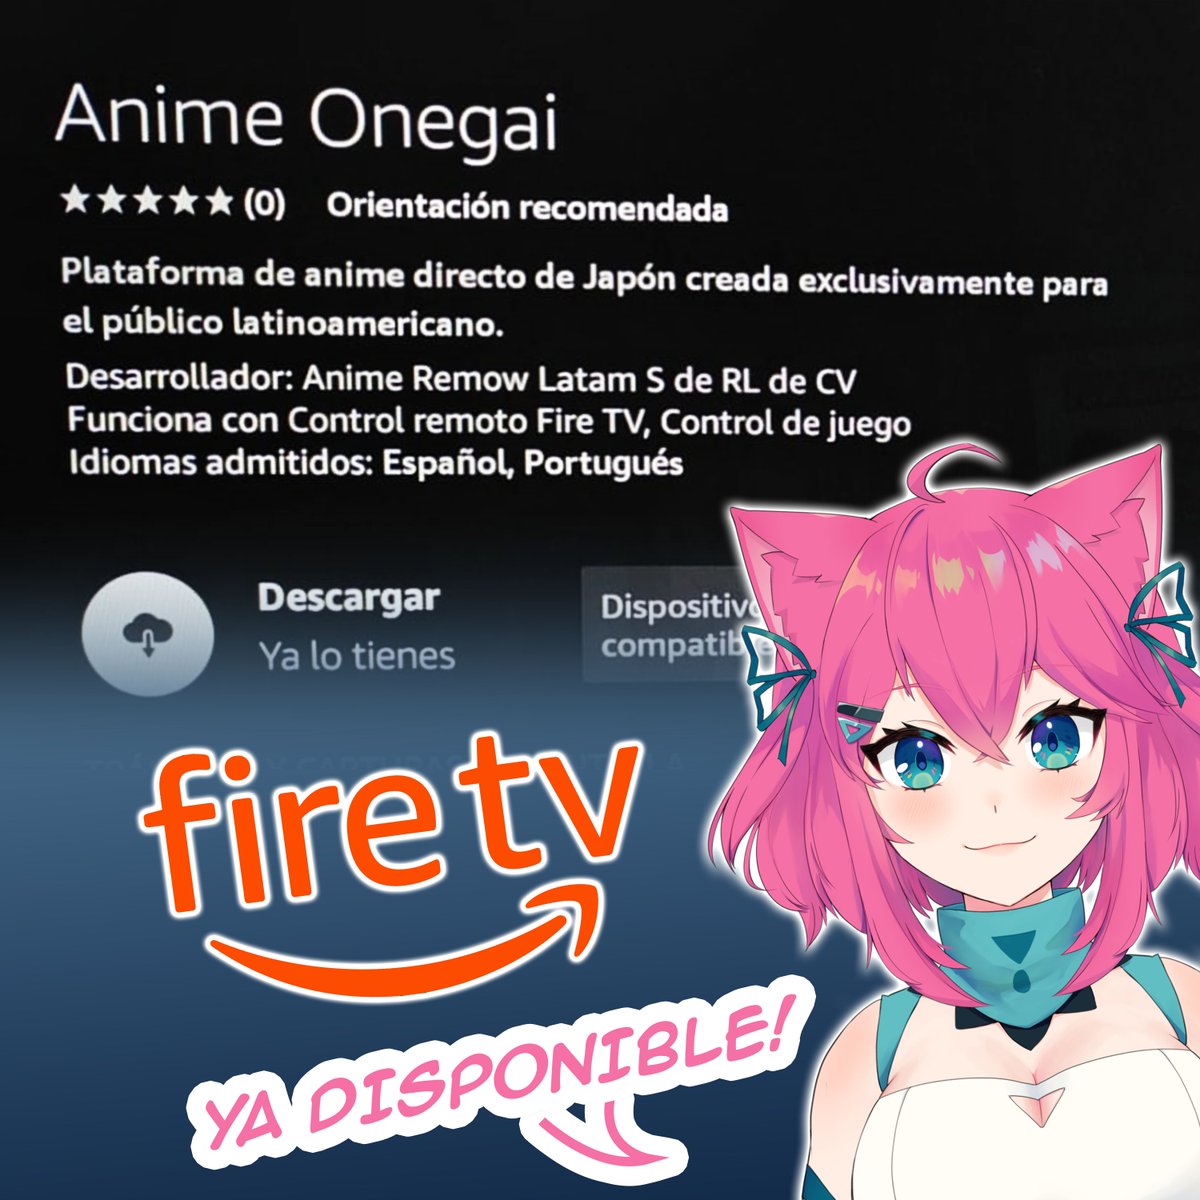 ES OFICIAL ANIME ONEGAI YA ESTÁ DISPONIBLE EN ¡FIRE TV! 🔥😱Búscanos en la tienda de aplicaciones de Amazon.
#comunidadonegai #serieanime #anime #firetv #amazon